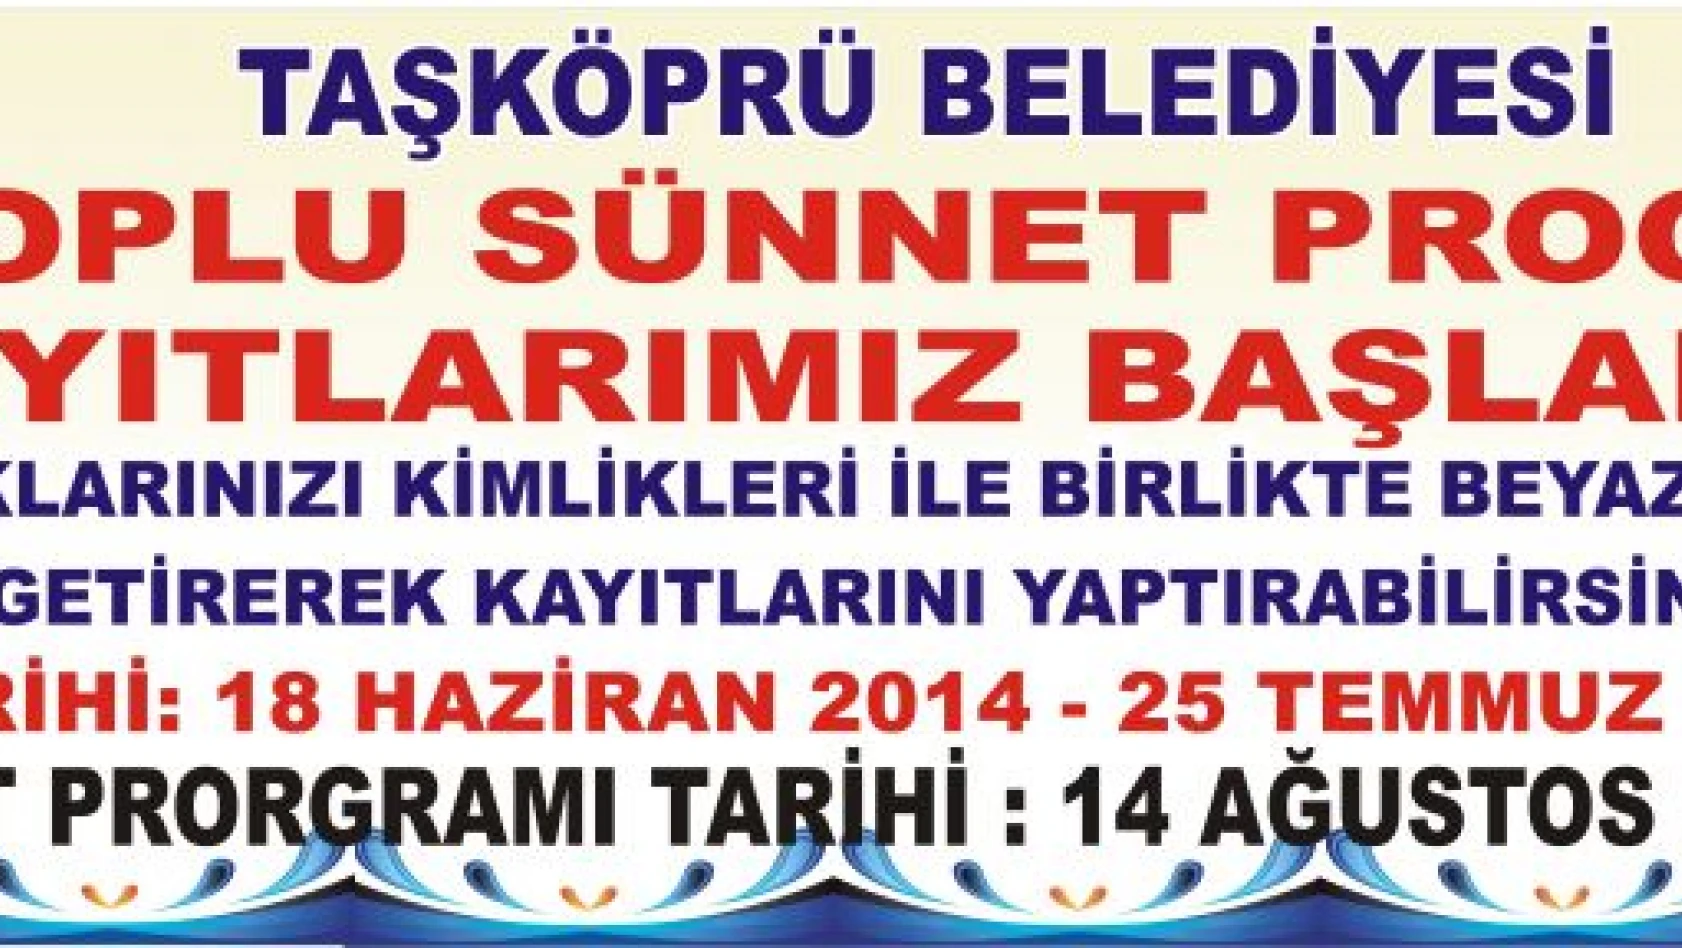 Taşköprü Belediyesi'nden Toplu Sünnet Programı